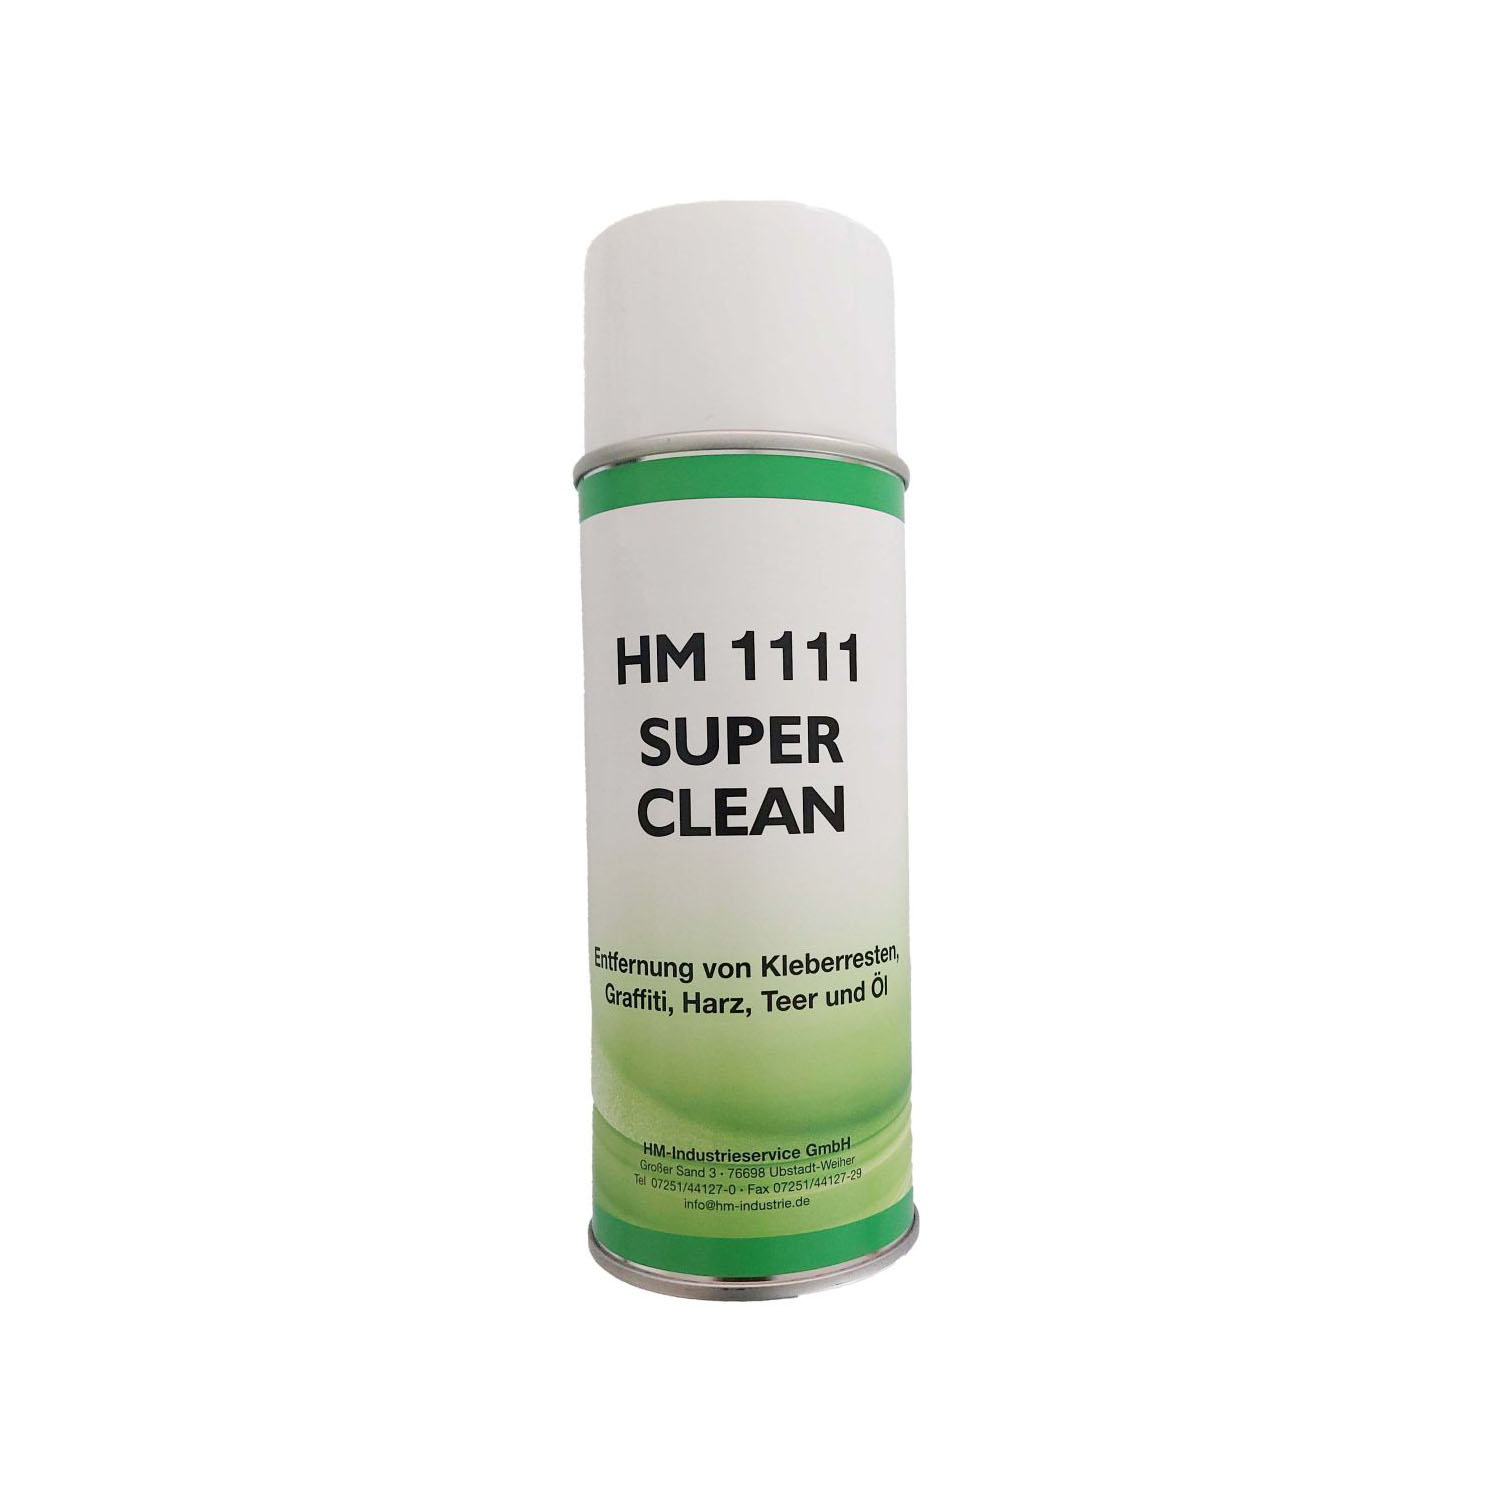 HM 1111 Super Clean